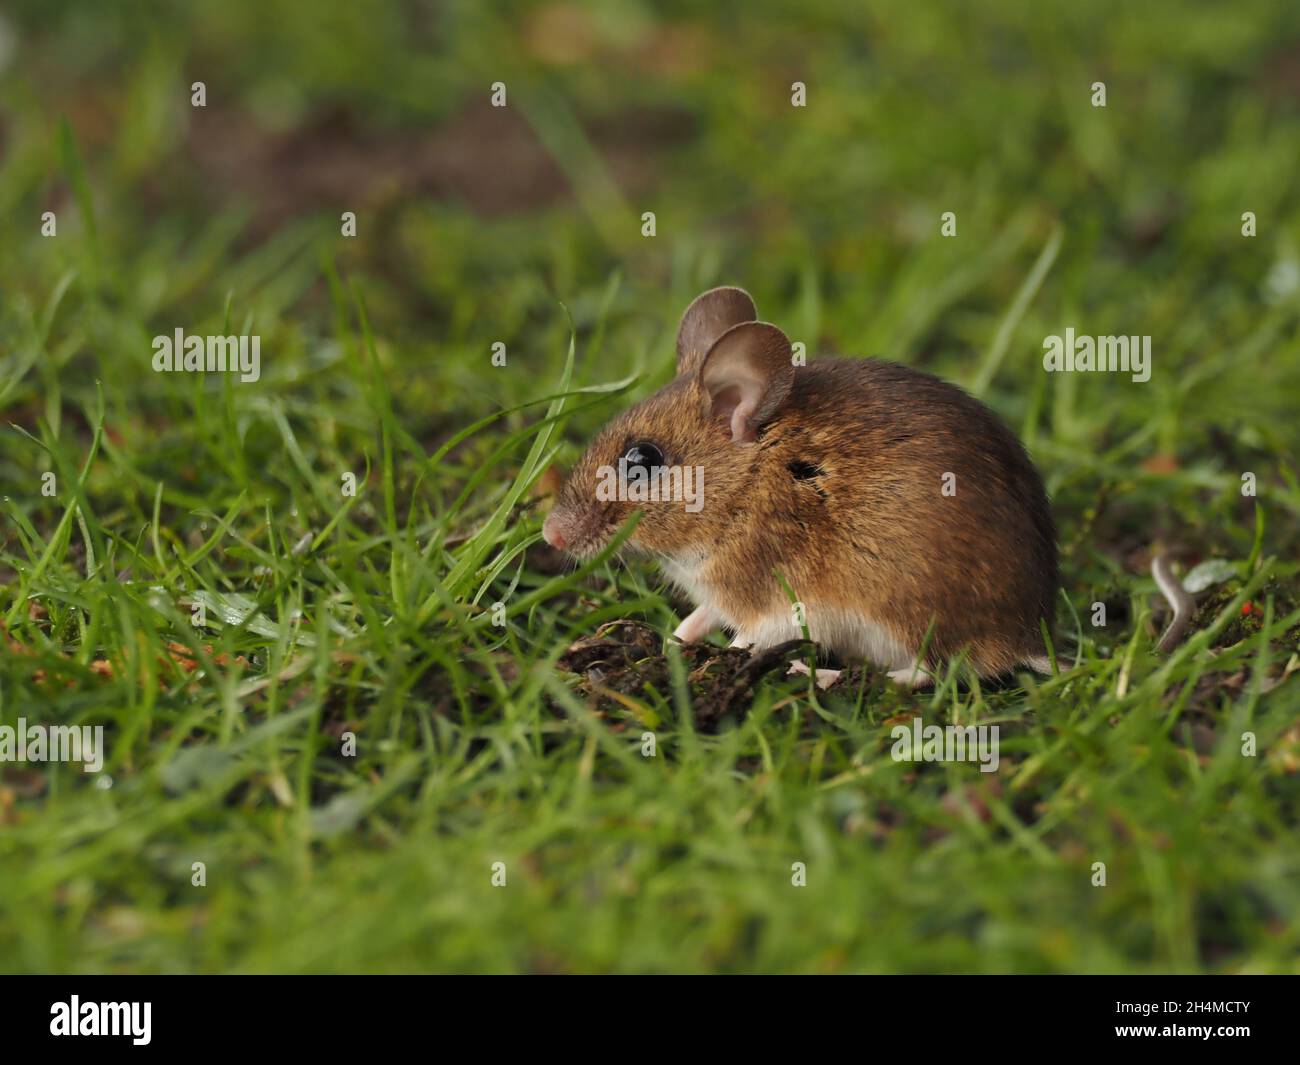 Il mouse in legno o il mouse da campo a coda lunga ha grandi orecchie e occhi per le sue dimensioni. Si trova in molti habitat tra cui giardini, campi, brughiere / brughiere Foto Stock